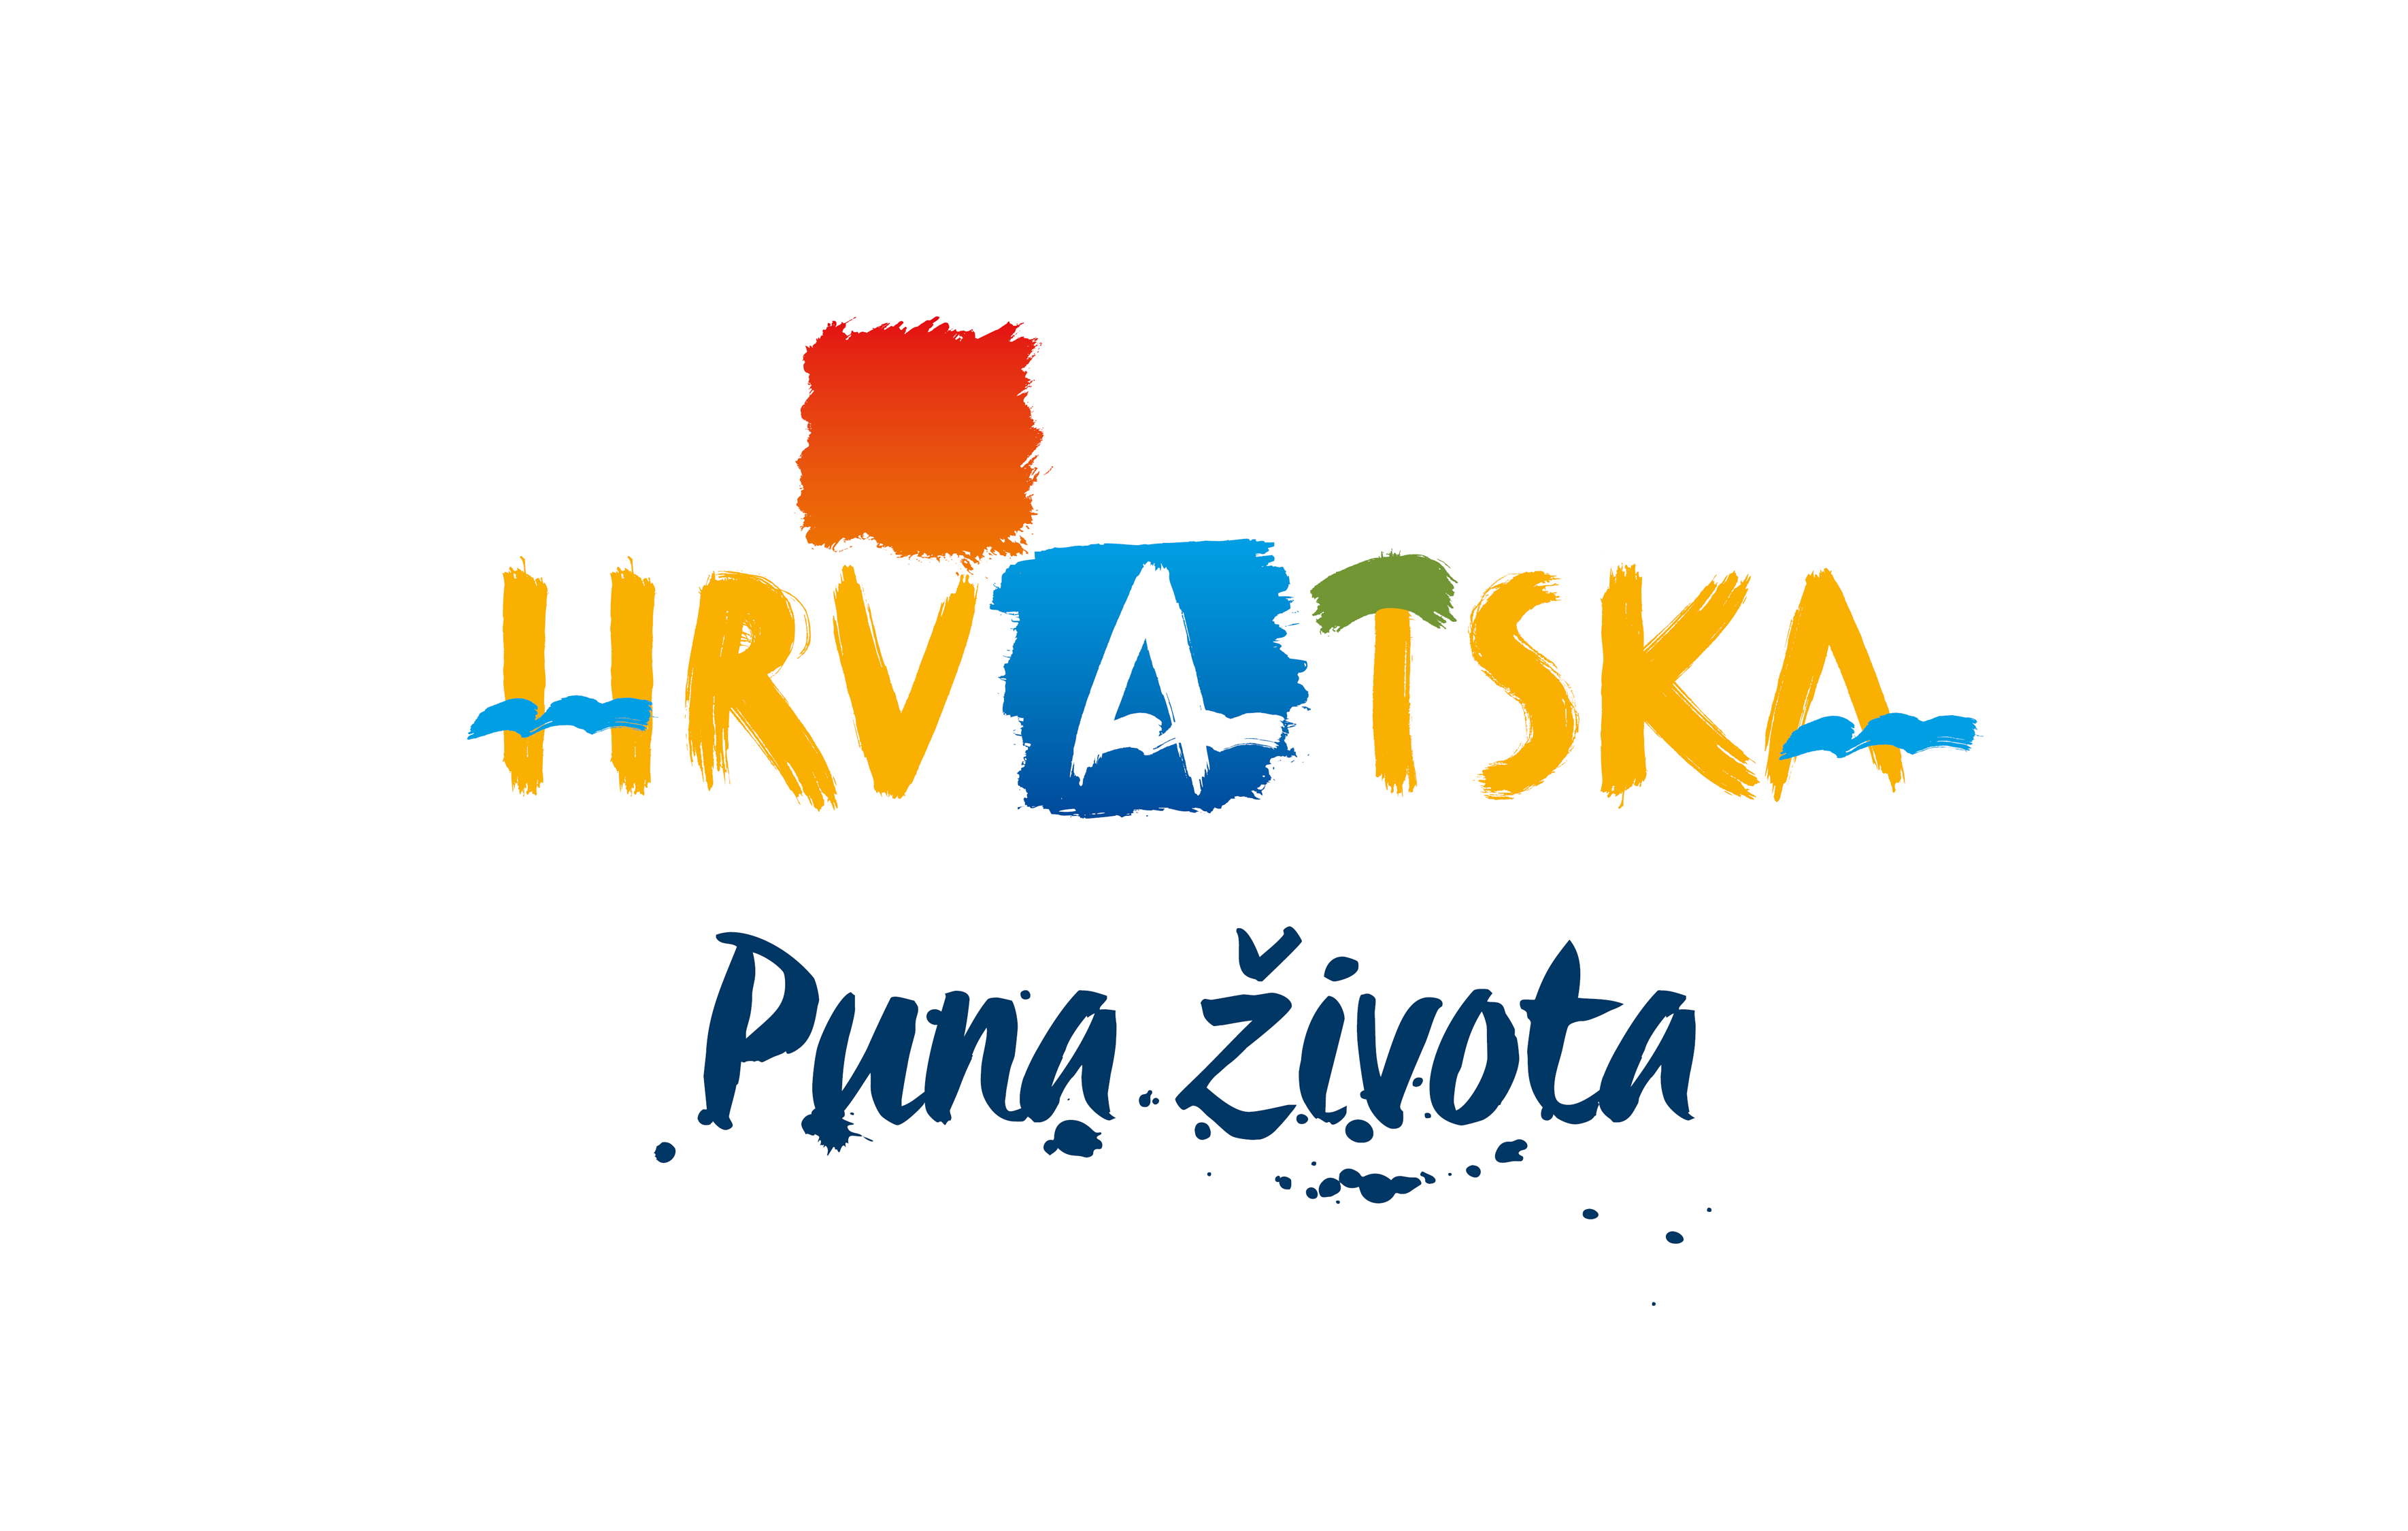 Ministarstvo turizma Republike Hrvatske